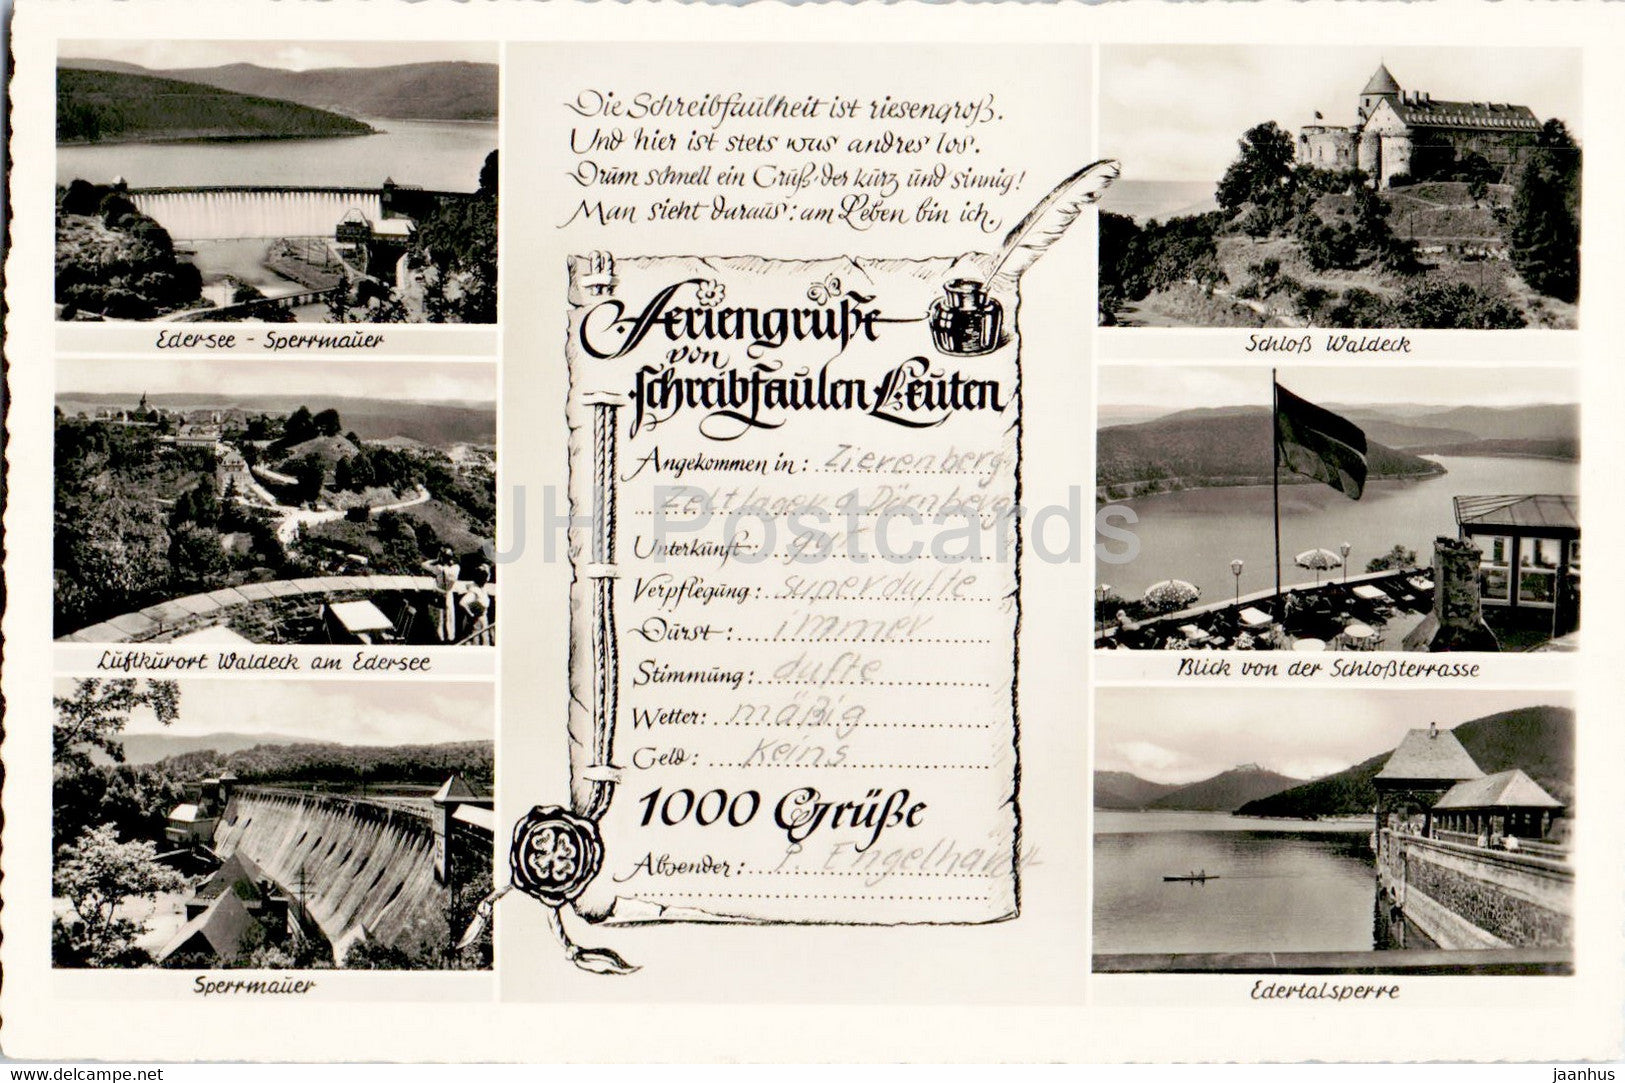 Feriengrusse von schreibfaulen Leuten - Edersee Sperrmauer - Schloss Waldeck - old postcard - Germany - unused - JH Postcards